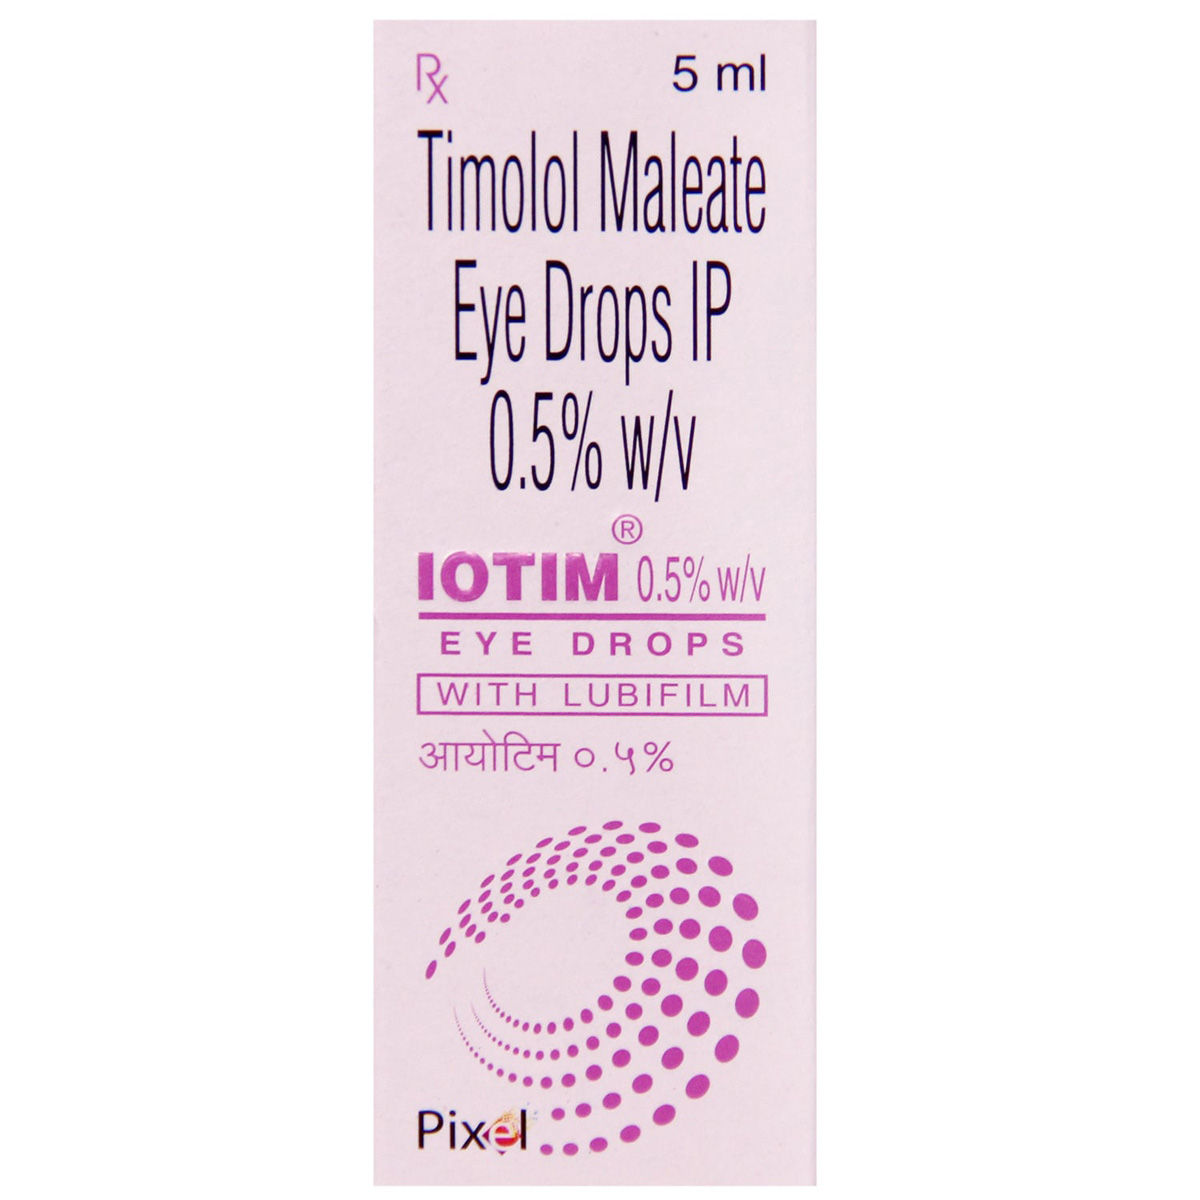 Buy Iotim 0.5% Eye Drops 5 ml Online